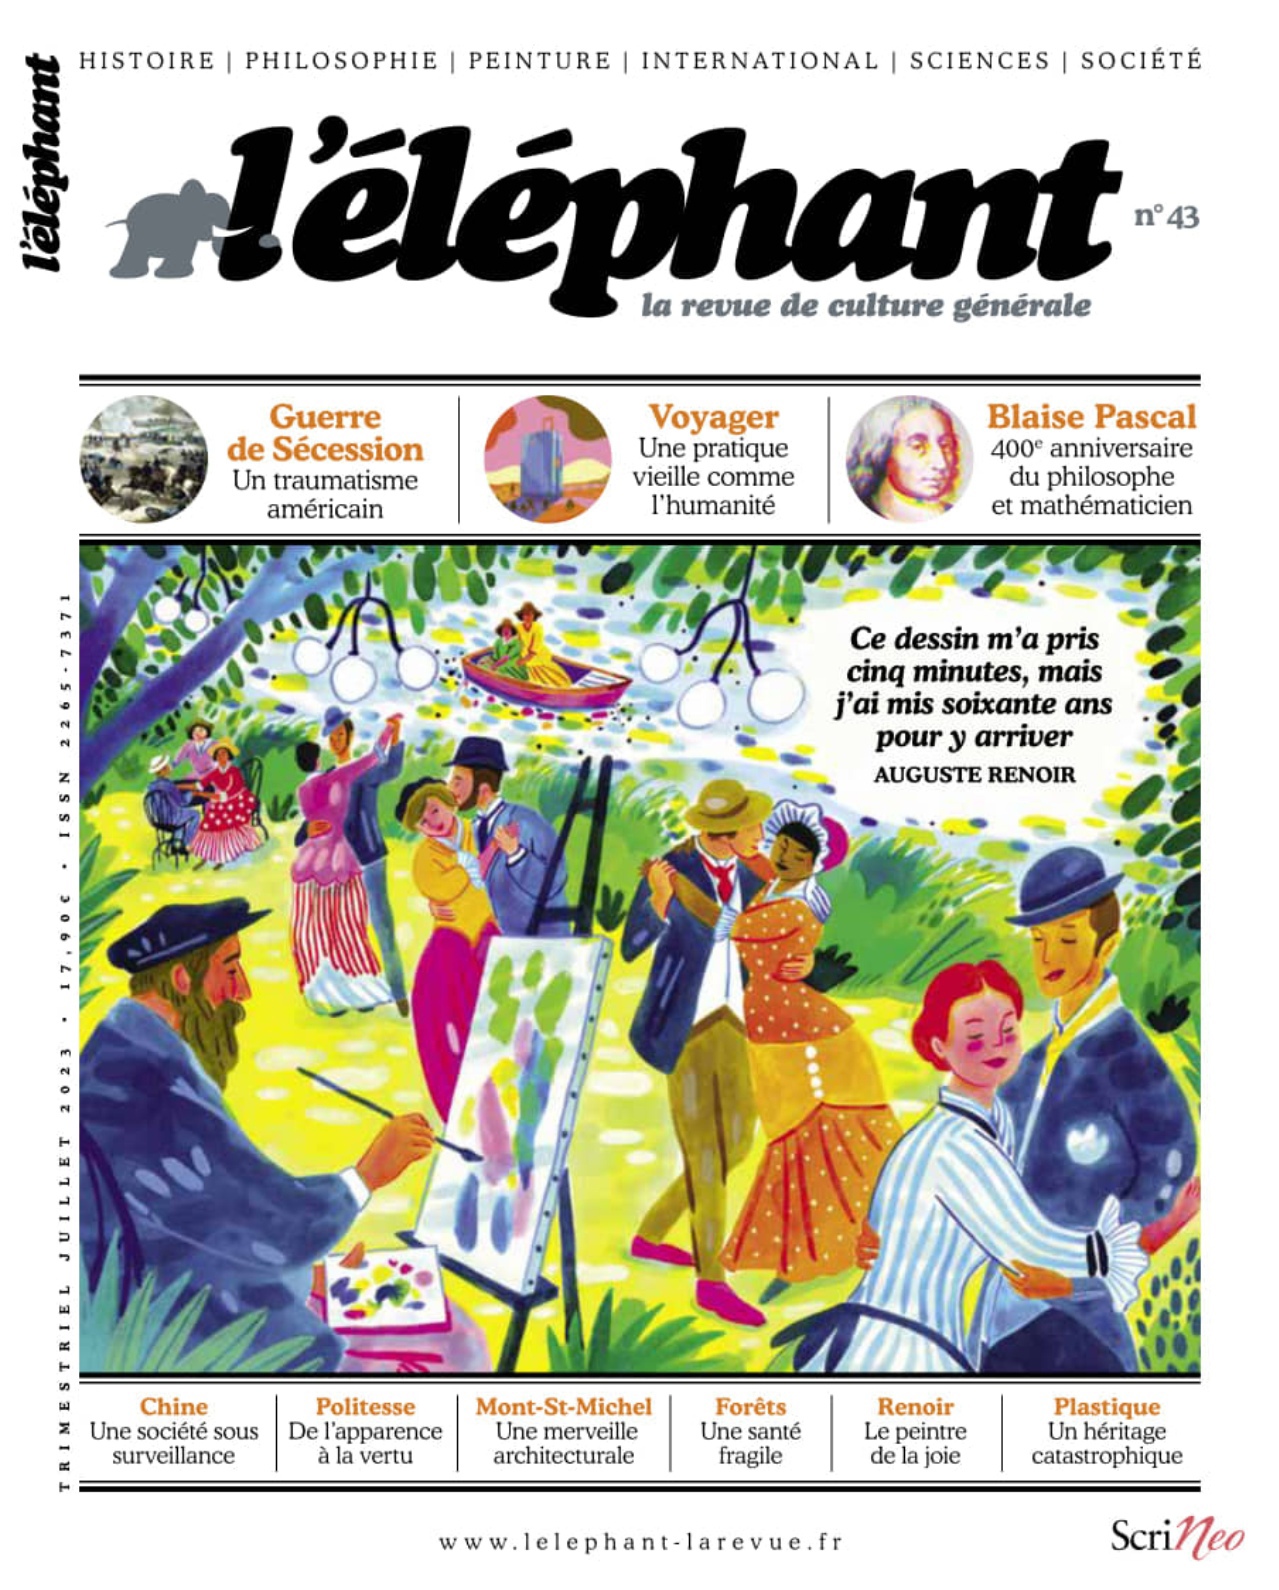 强烈推荐一本面向所有年龄段阅读的法语综合文化期刊 L'Éléphant 2015-2023年合集